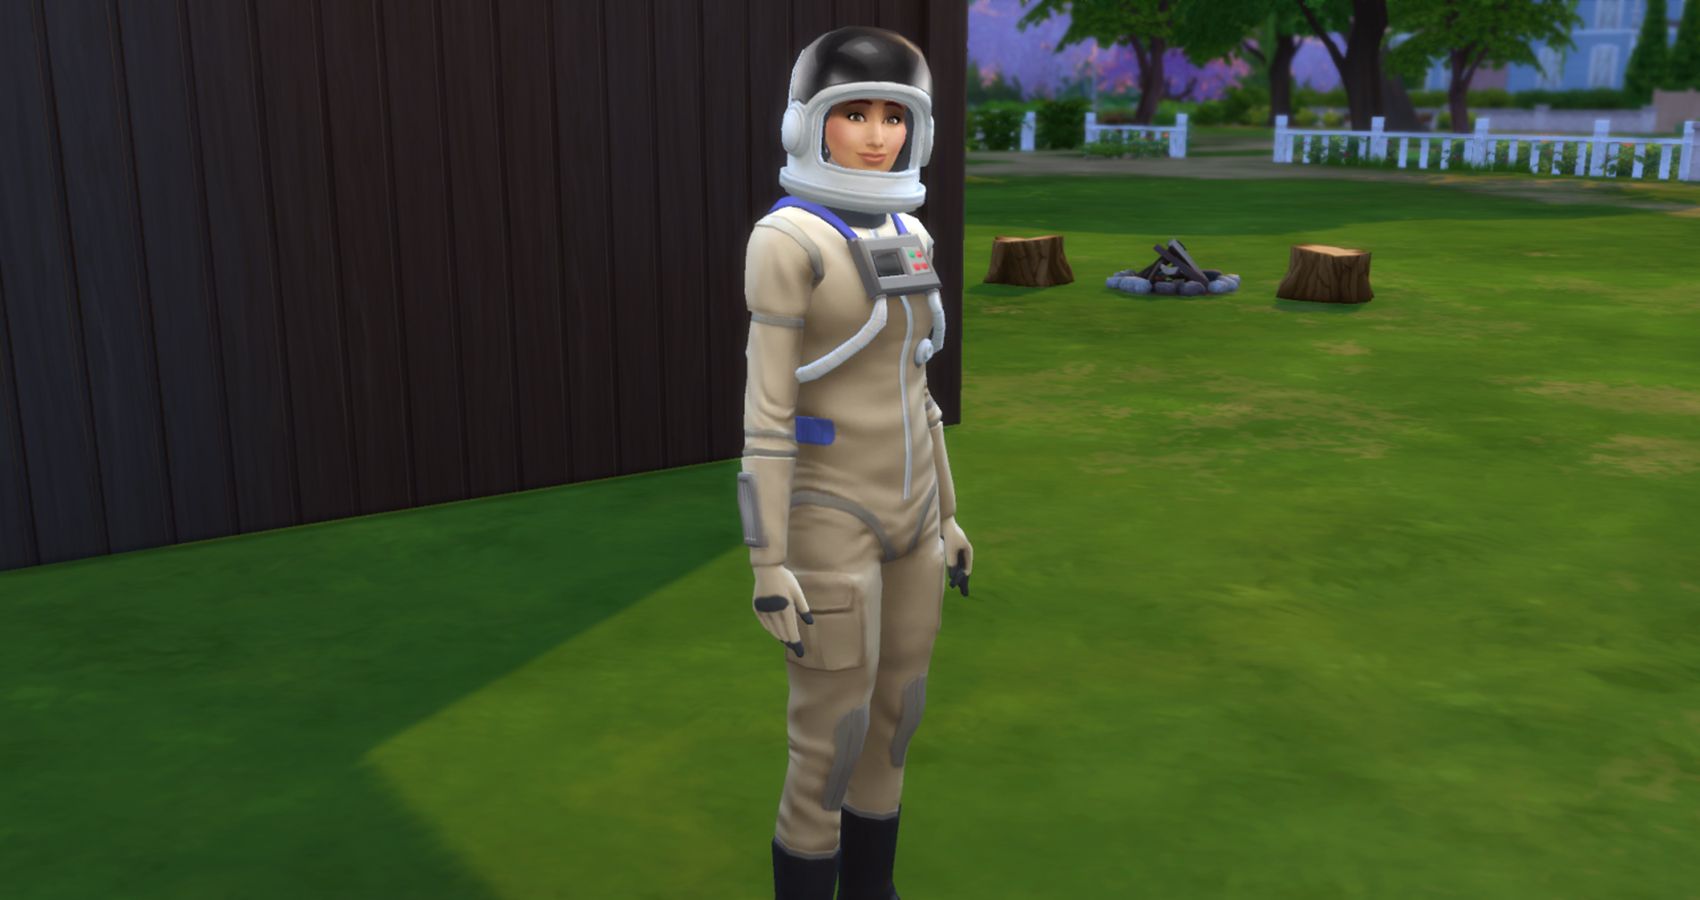 A sim in astronaut uniform